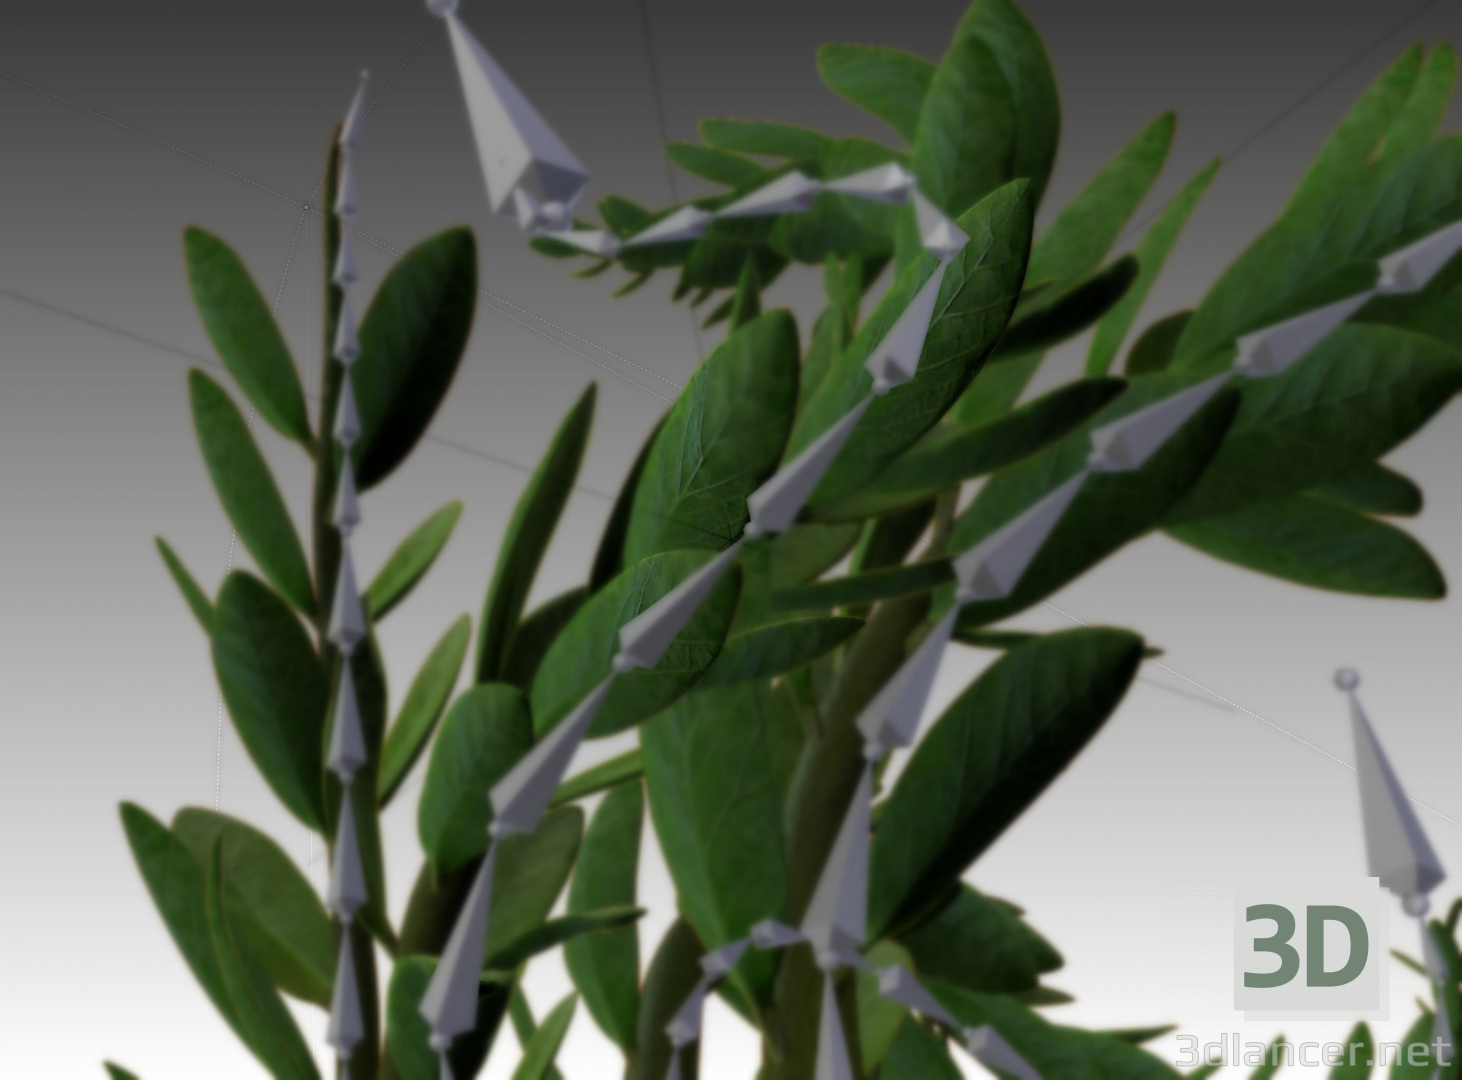 manipulierte, animierte Zimmerpflanze im Mixer 3D-Modell kaufen - Rendern